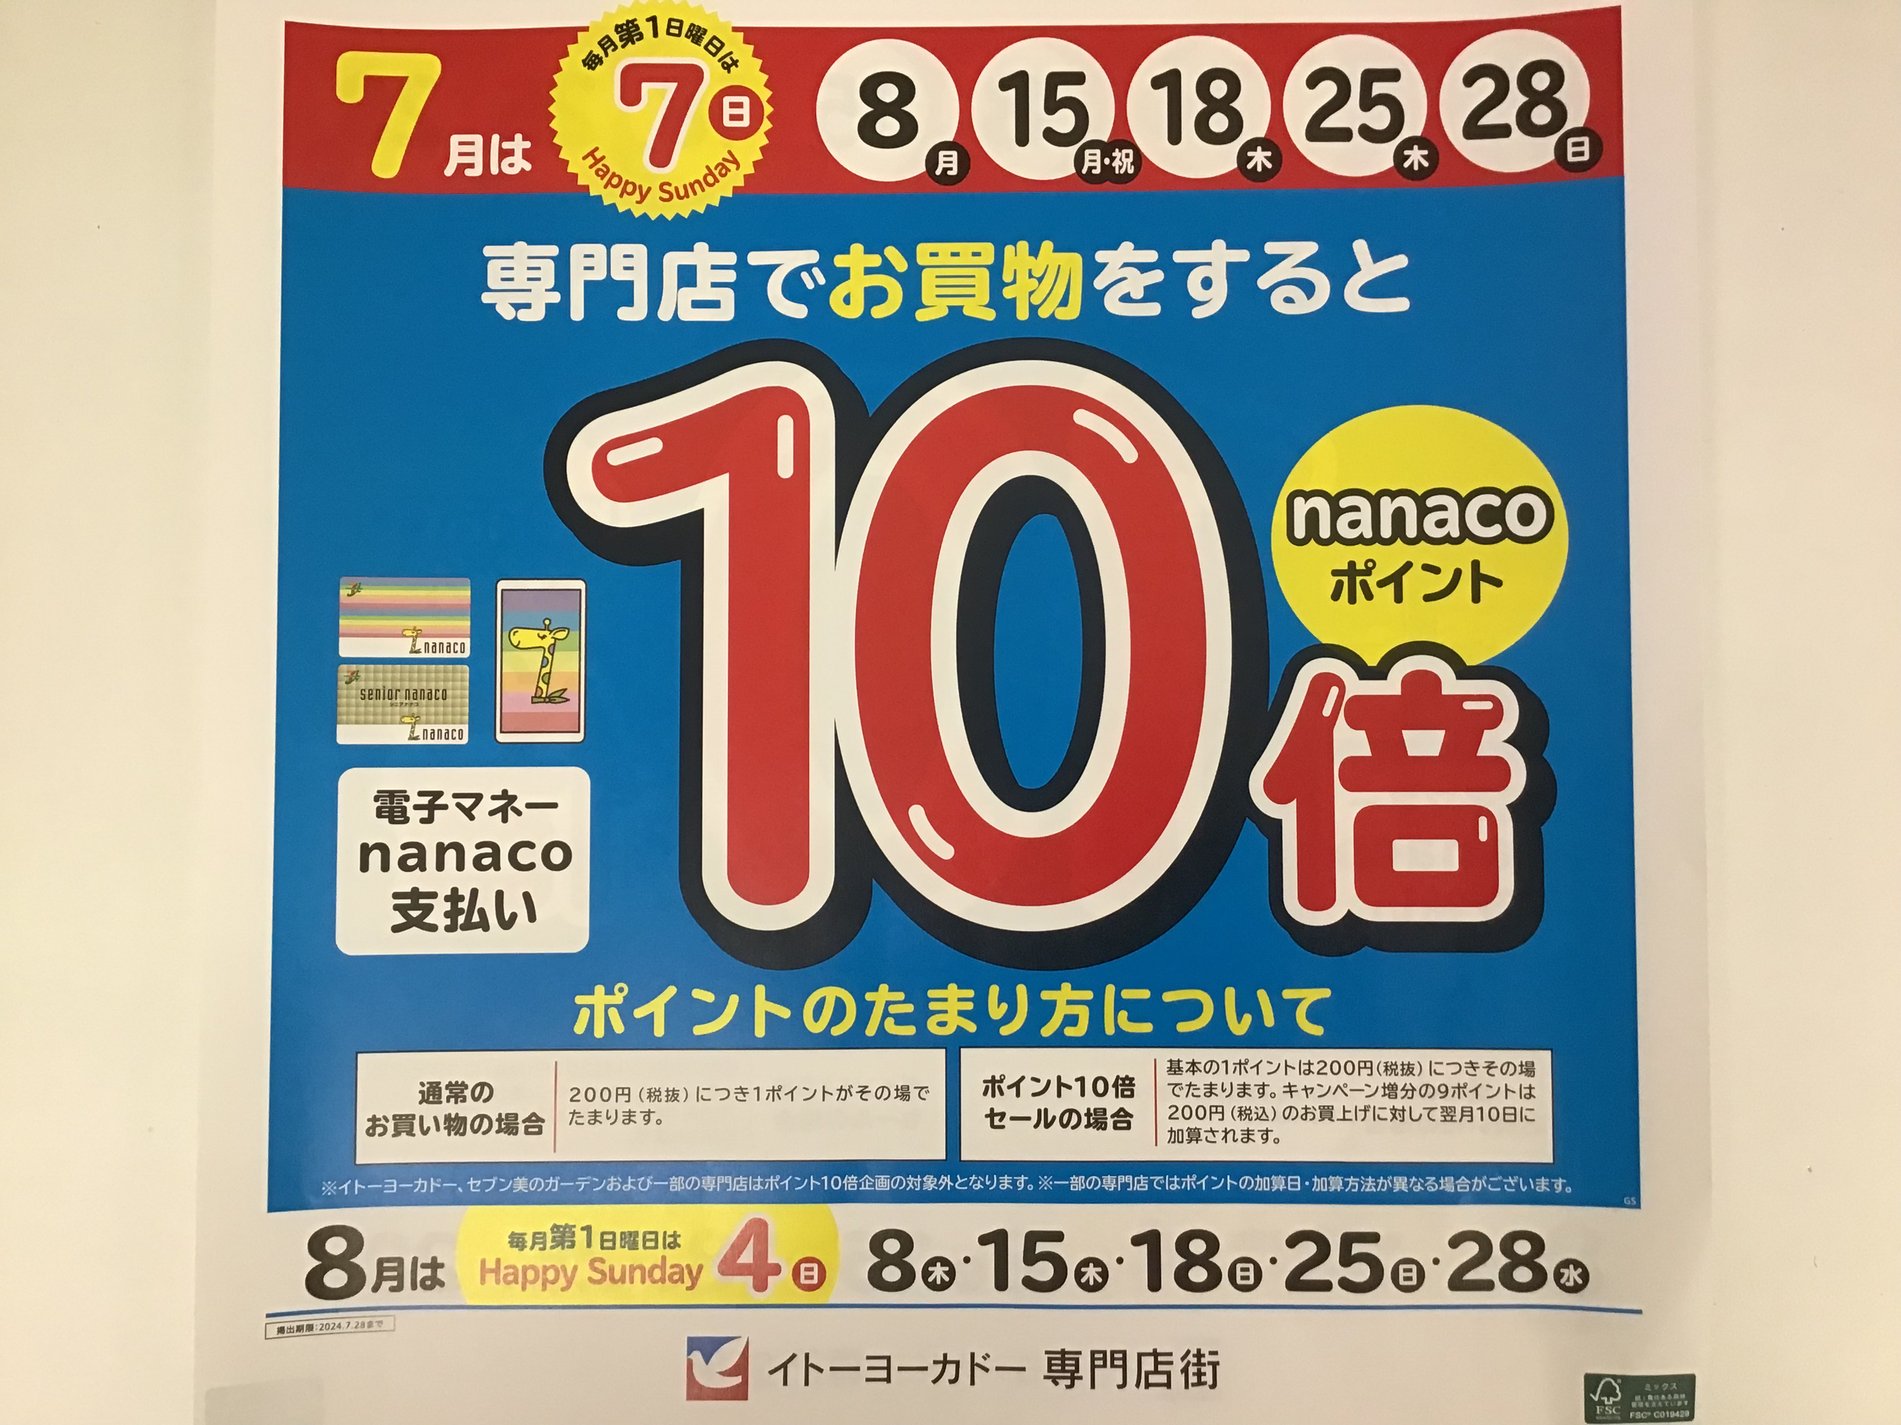 【7月もnanaco10倍】
期間限定で7月もnanacoポイントが10倍になります。
ポイントを貯めるチャンスです!!